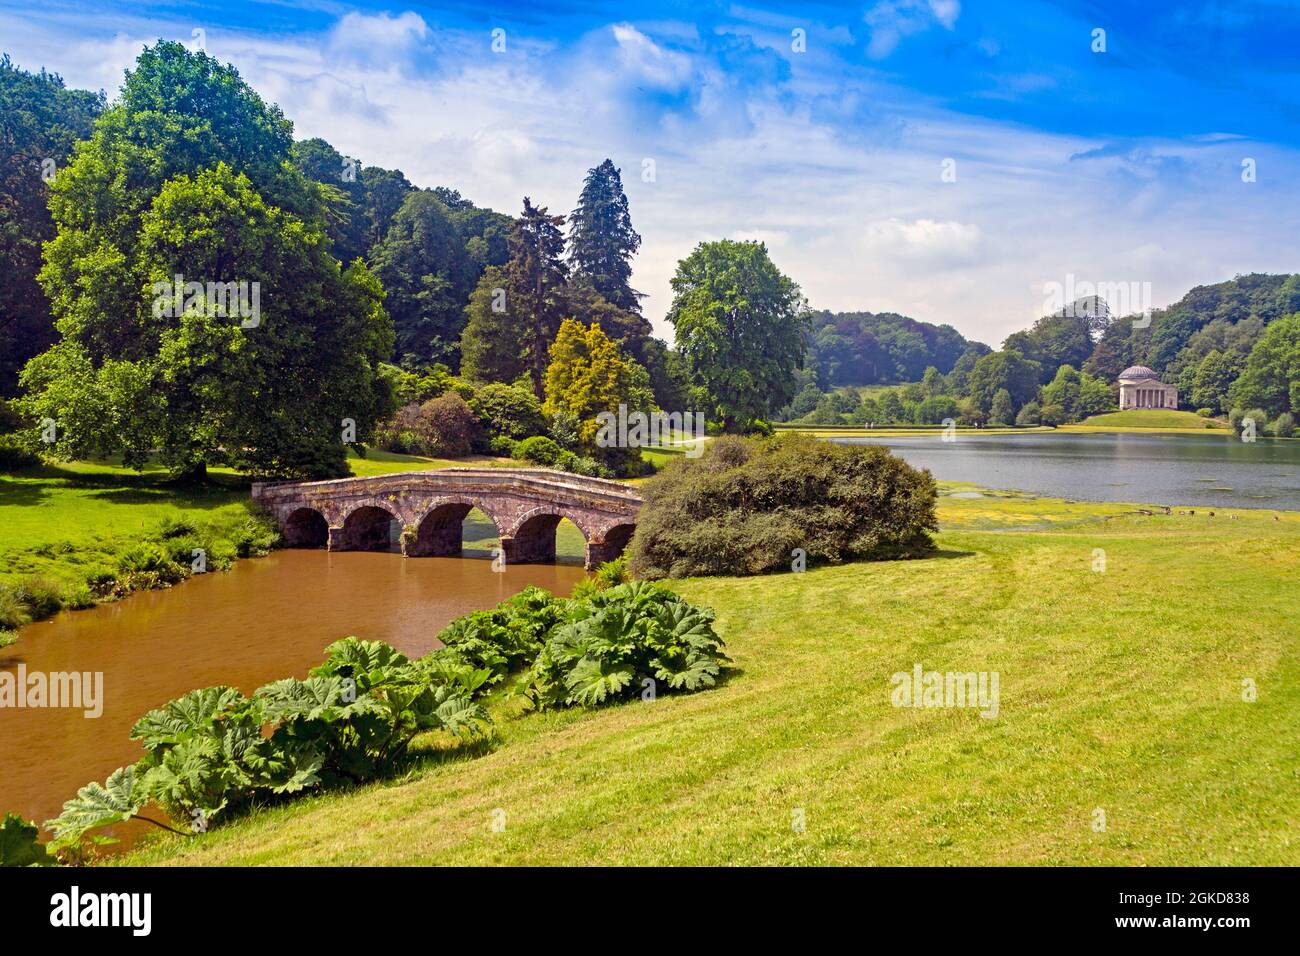 Die Palladio-Brücke und der See in Stourhead Gardens, Wiltshire, England, Großbritannien Stockfoto